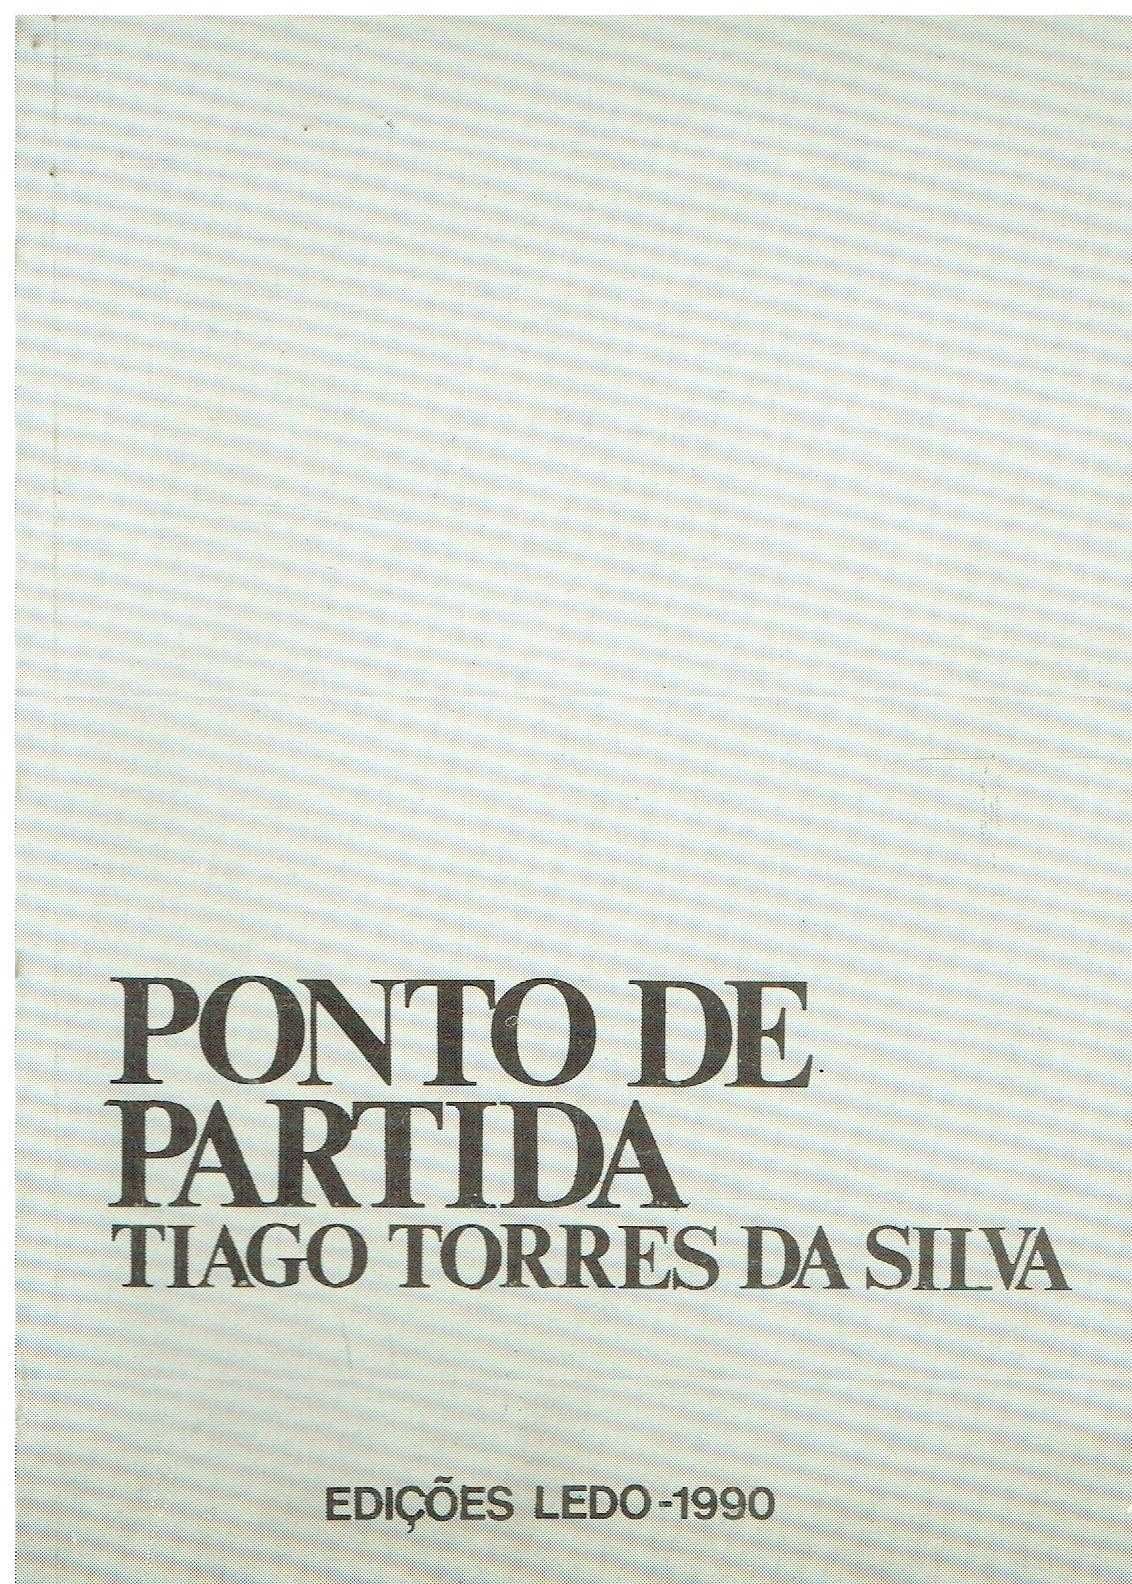 12099

Ponto de partida 
de Tiago Torres da Silva.